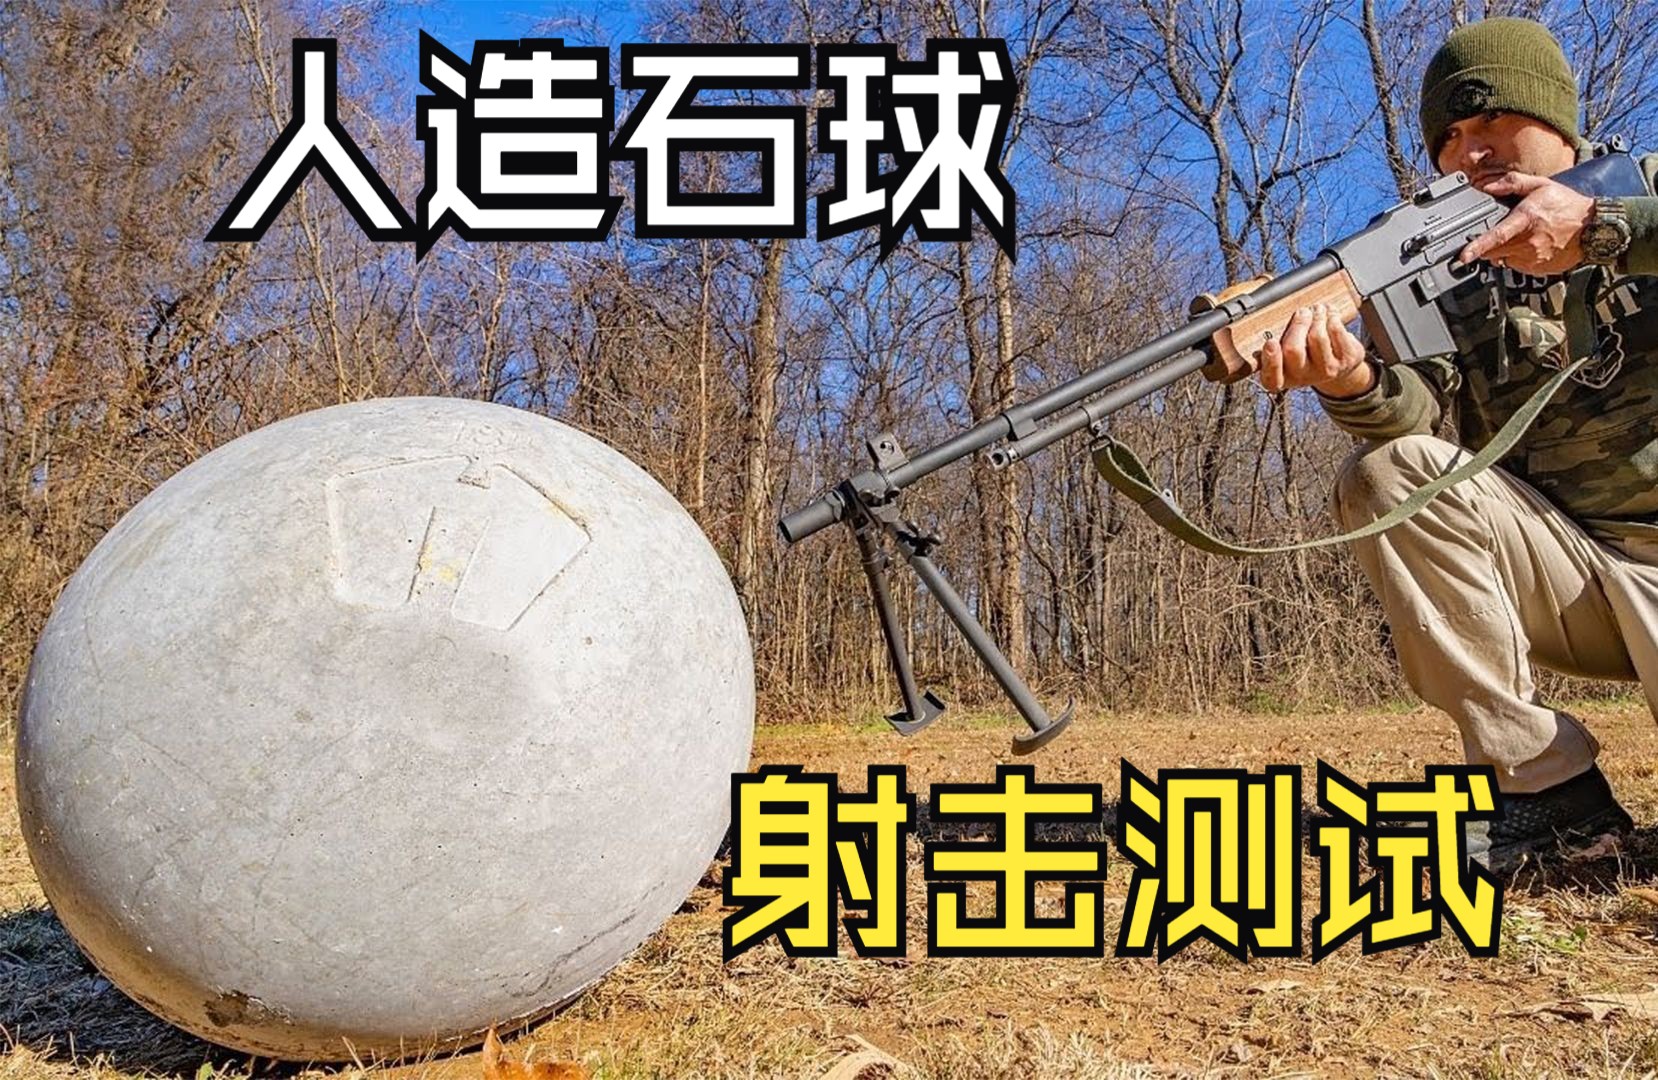 “人造石球”到底有多坚硬，它能扛住多大口径武器的攻击？